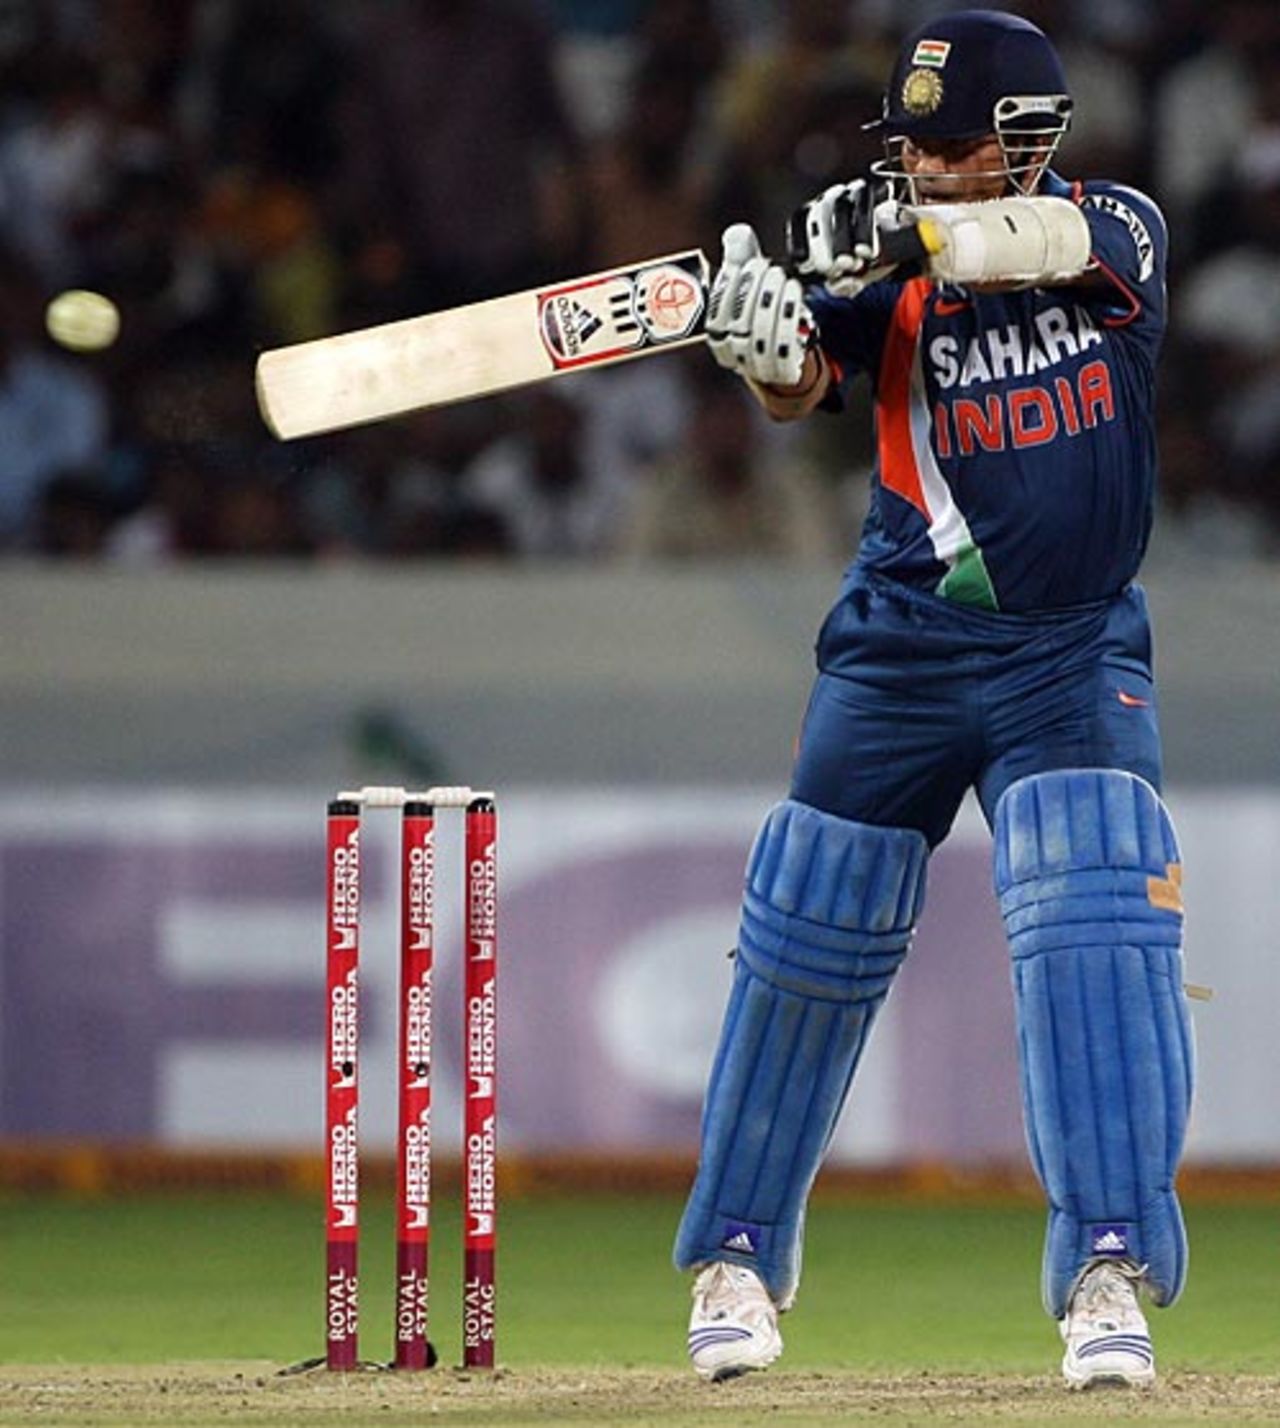 Sachin Tendulkar jumps to cut, India v Australia, 5th ODI, Hyderabad, November 5, 2009